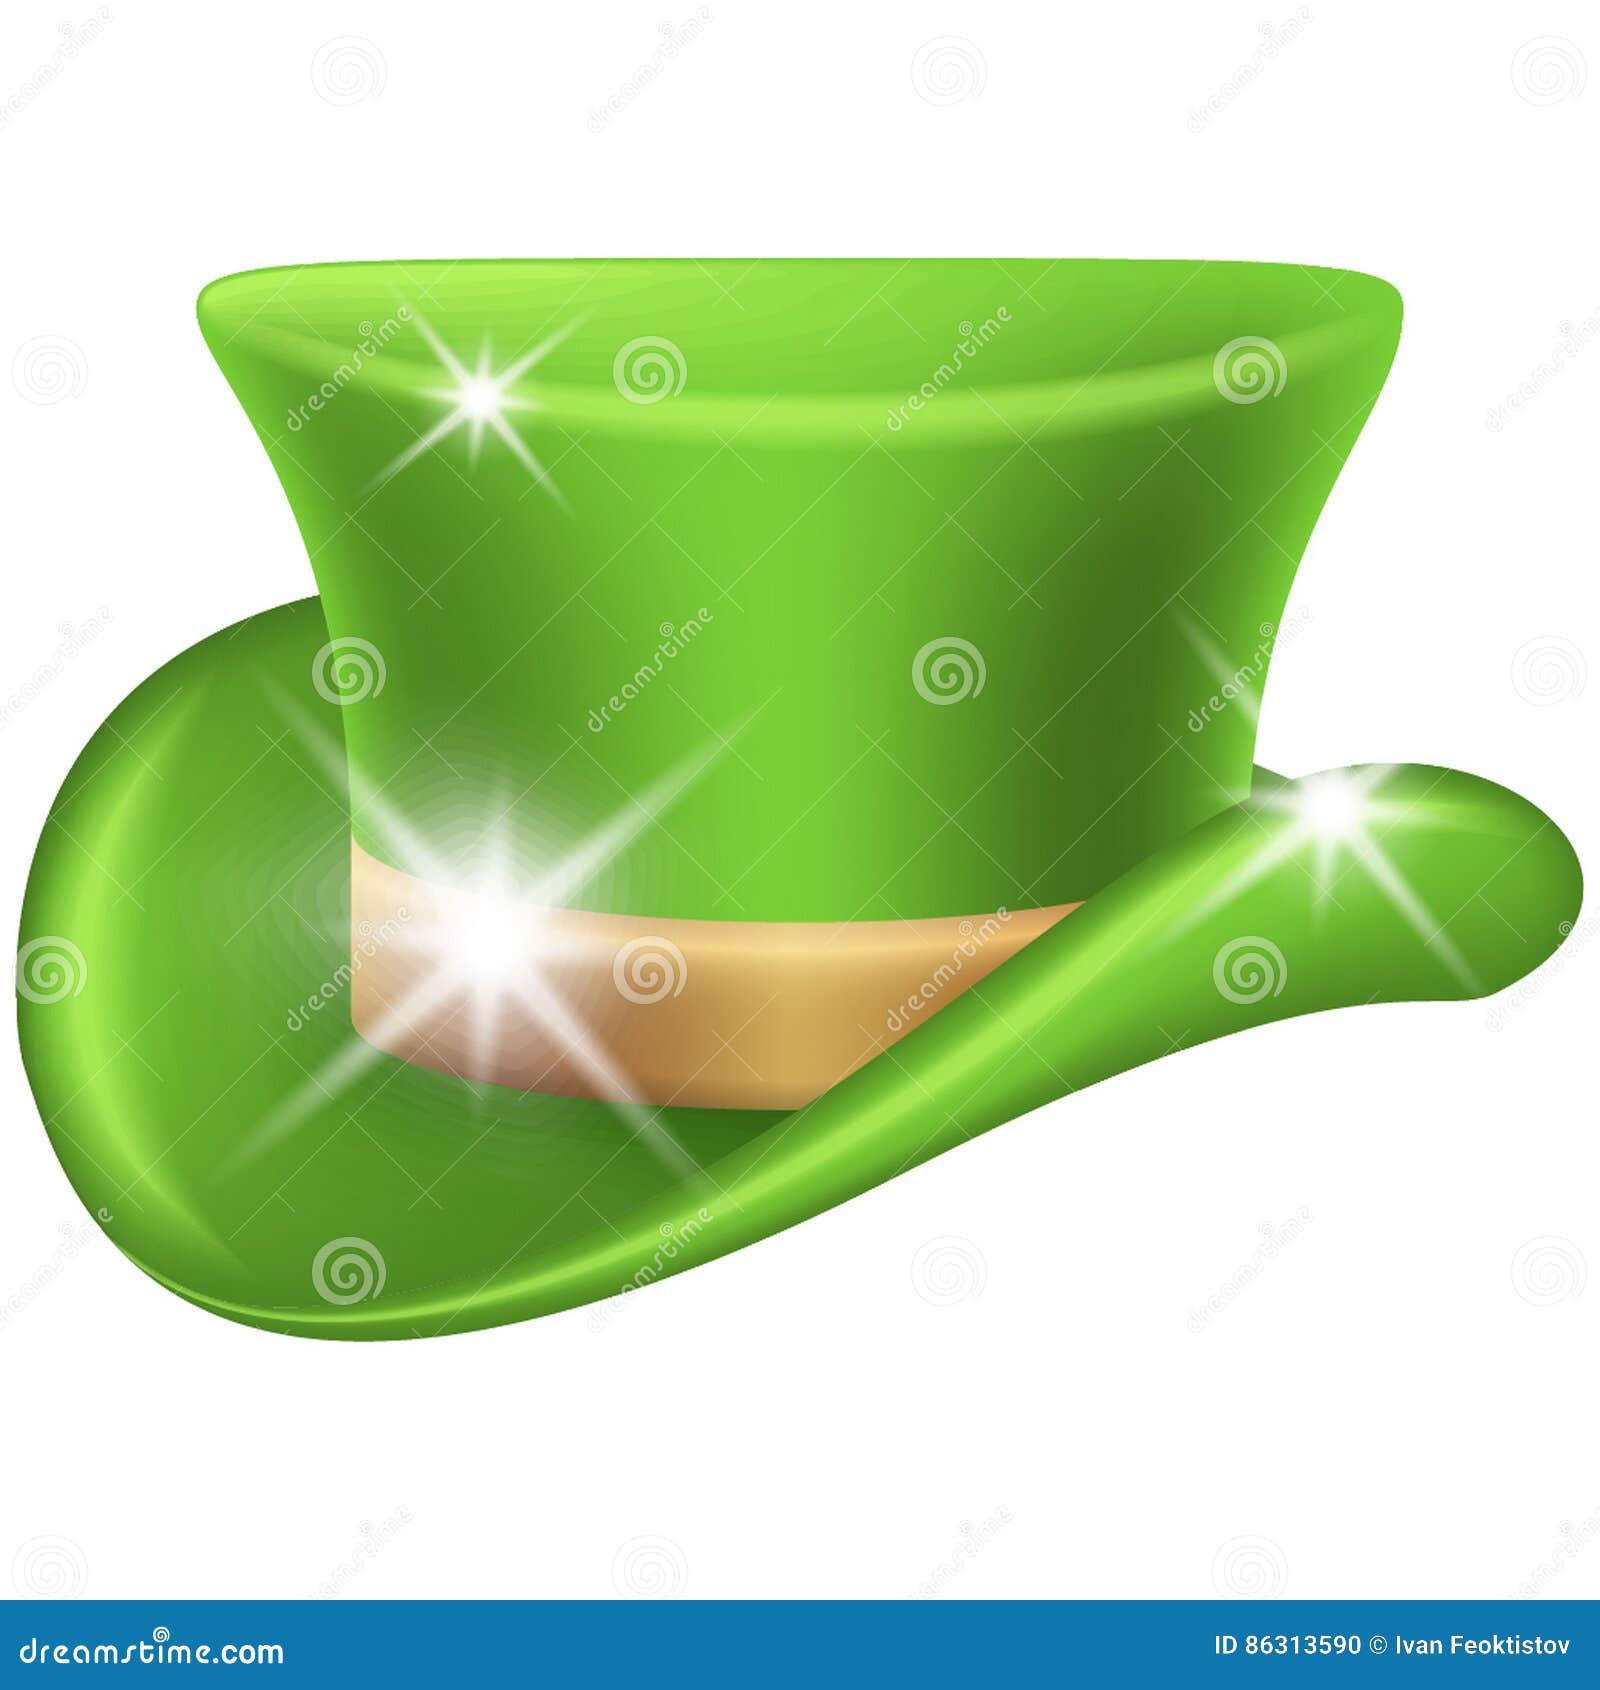 绿色帽子 库存图片. 图片 包括有 头饰, 保险开关, 对象, 狂欢节, 溢满, 充满的, 帽子, 绿色 - 23970113